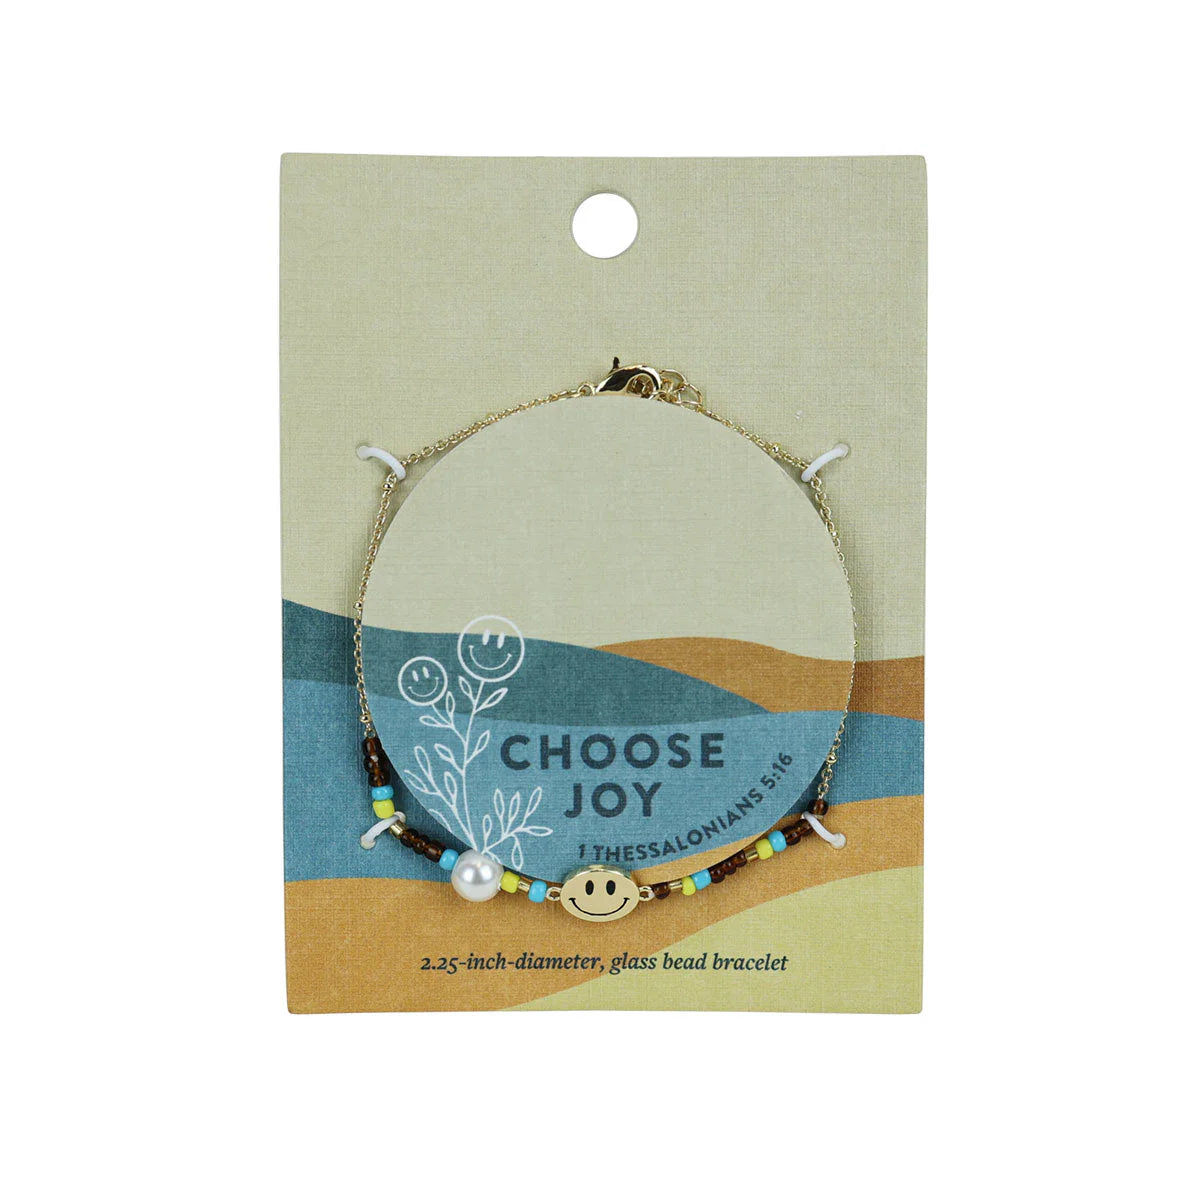 grace & truth Womens Bracelet Choose Joy grace & truth® accessories jewelry Women's